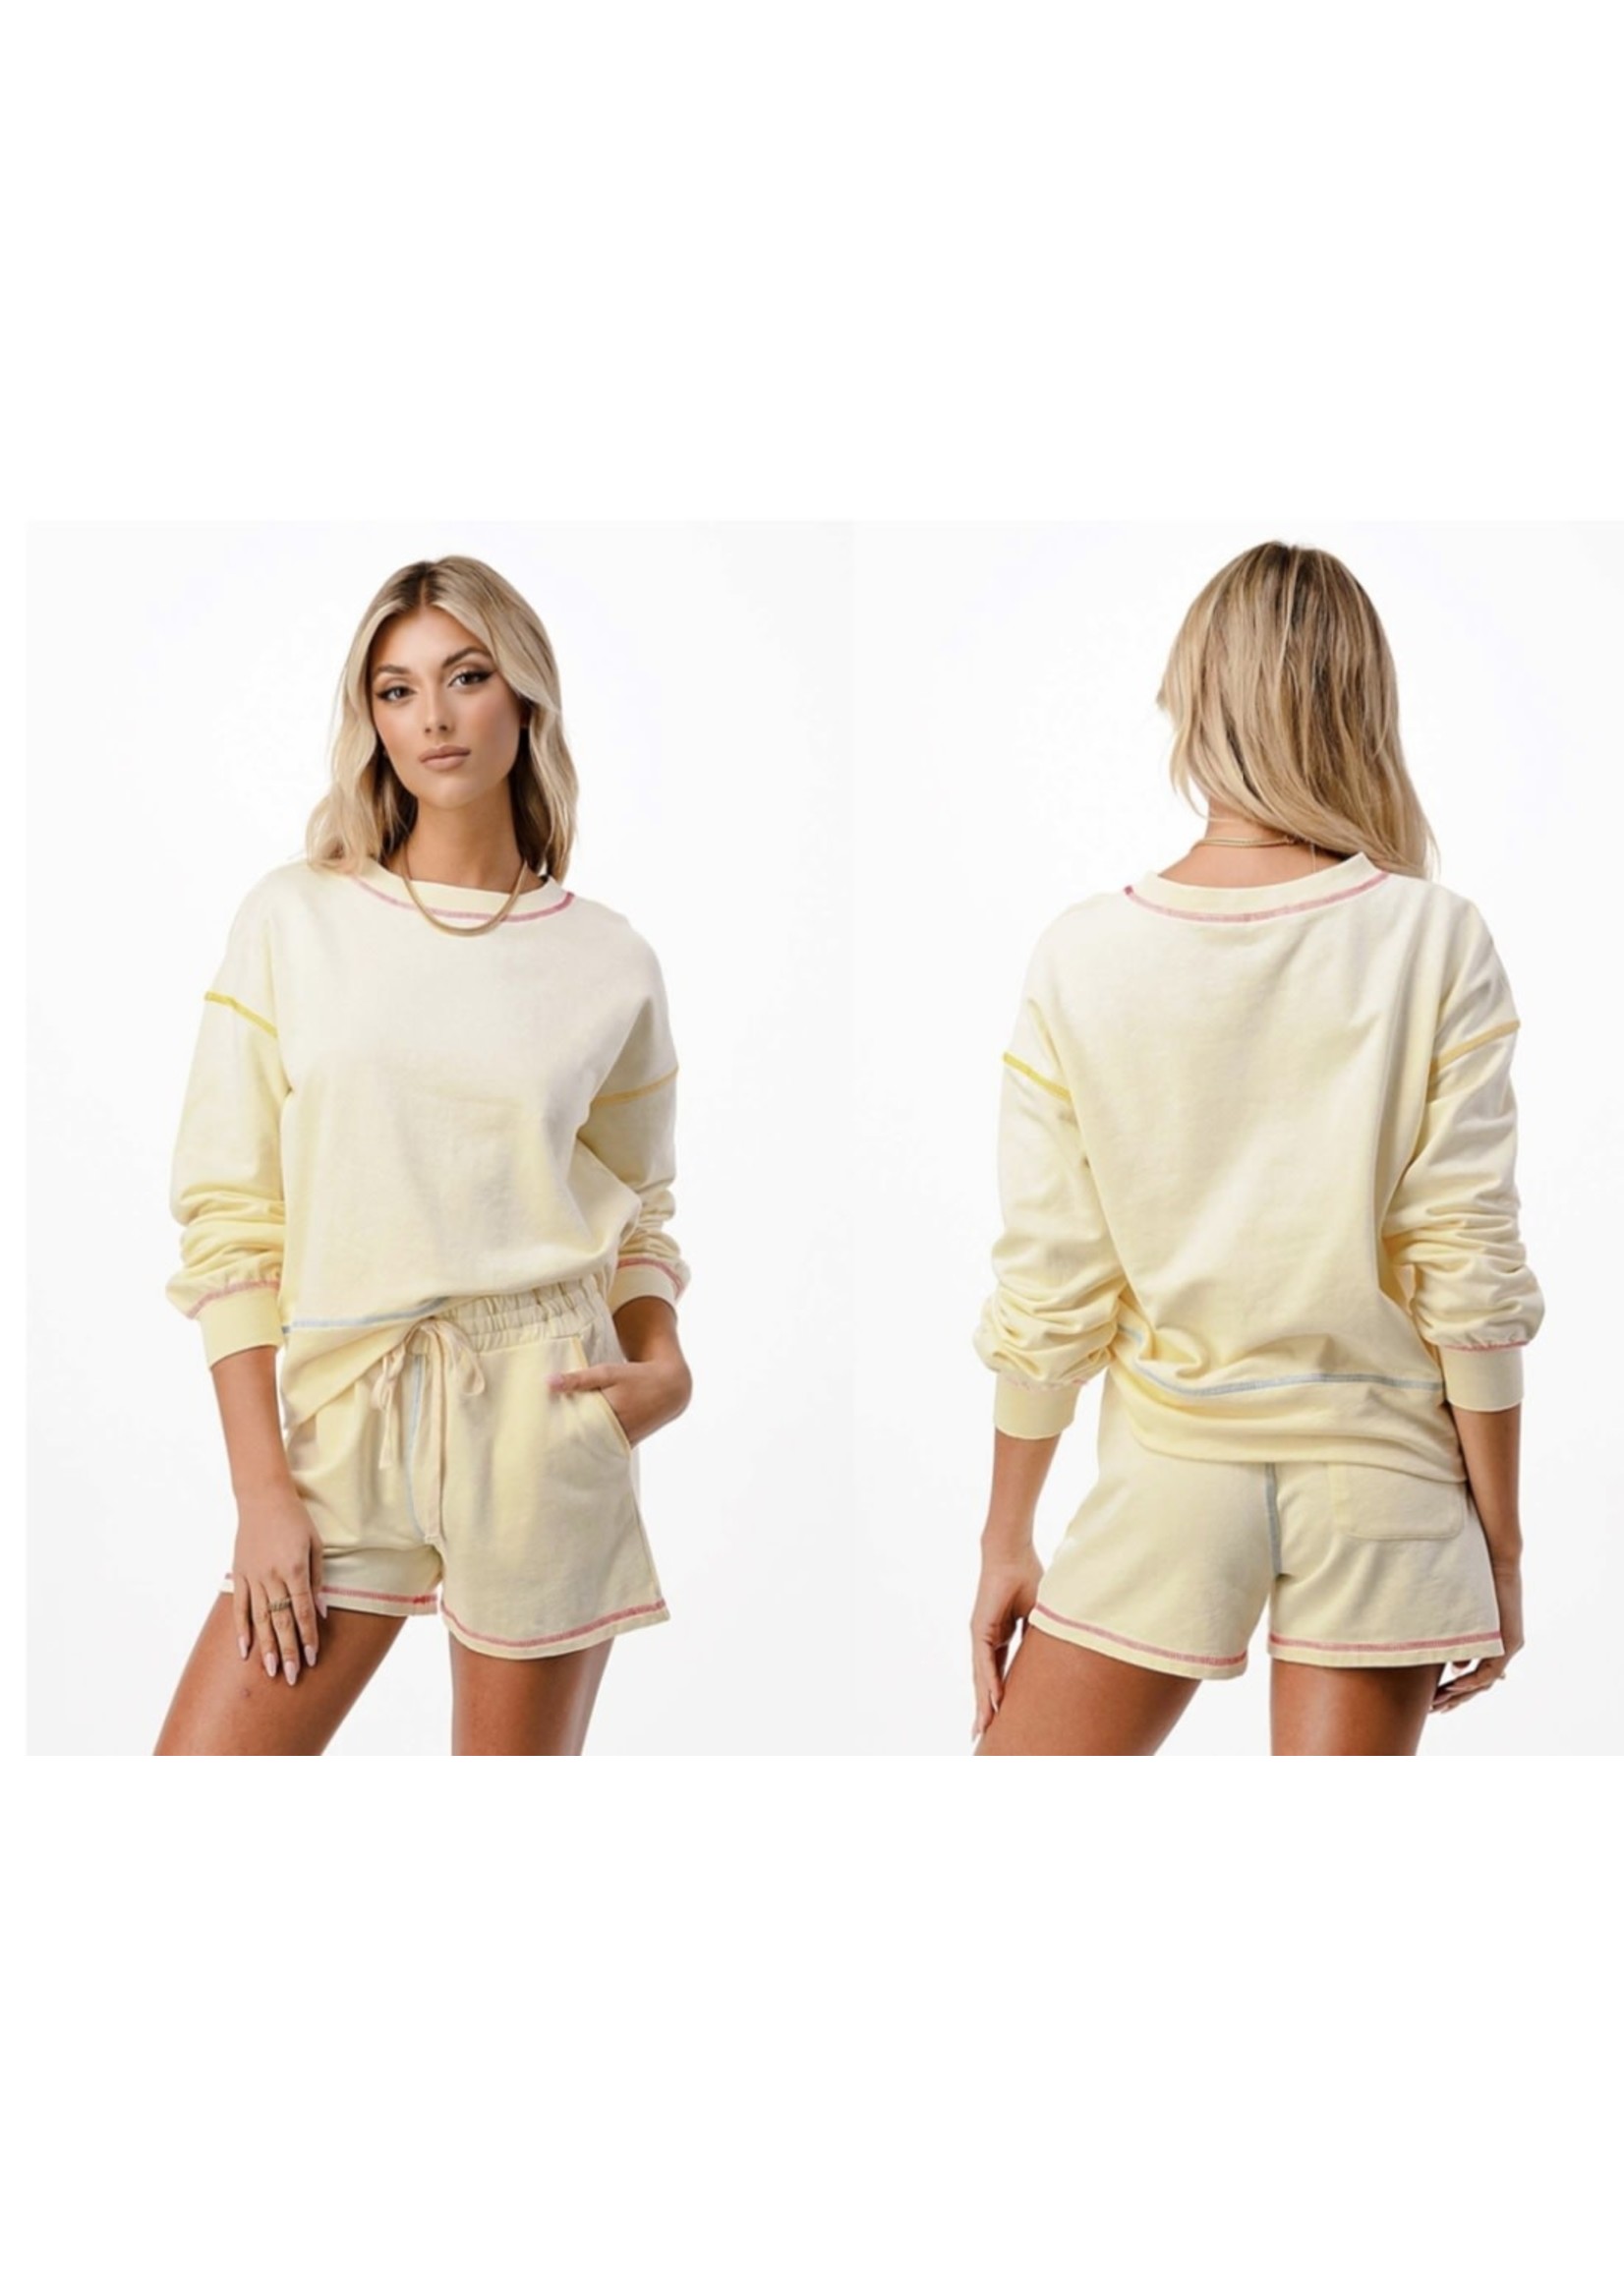 Cream Lightweight Sweatshirt